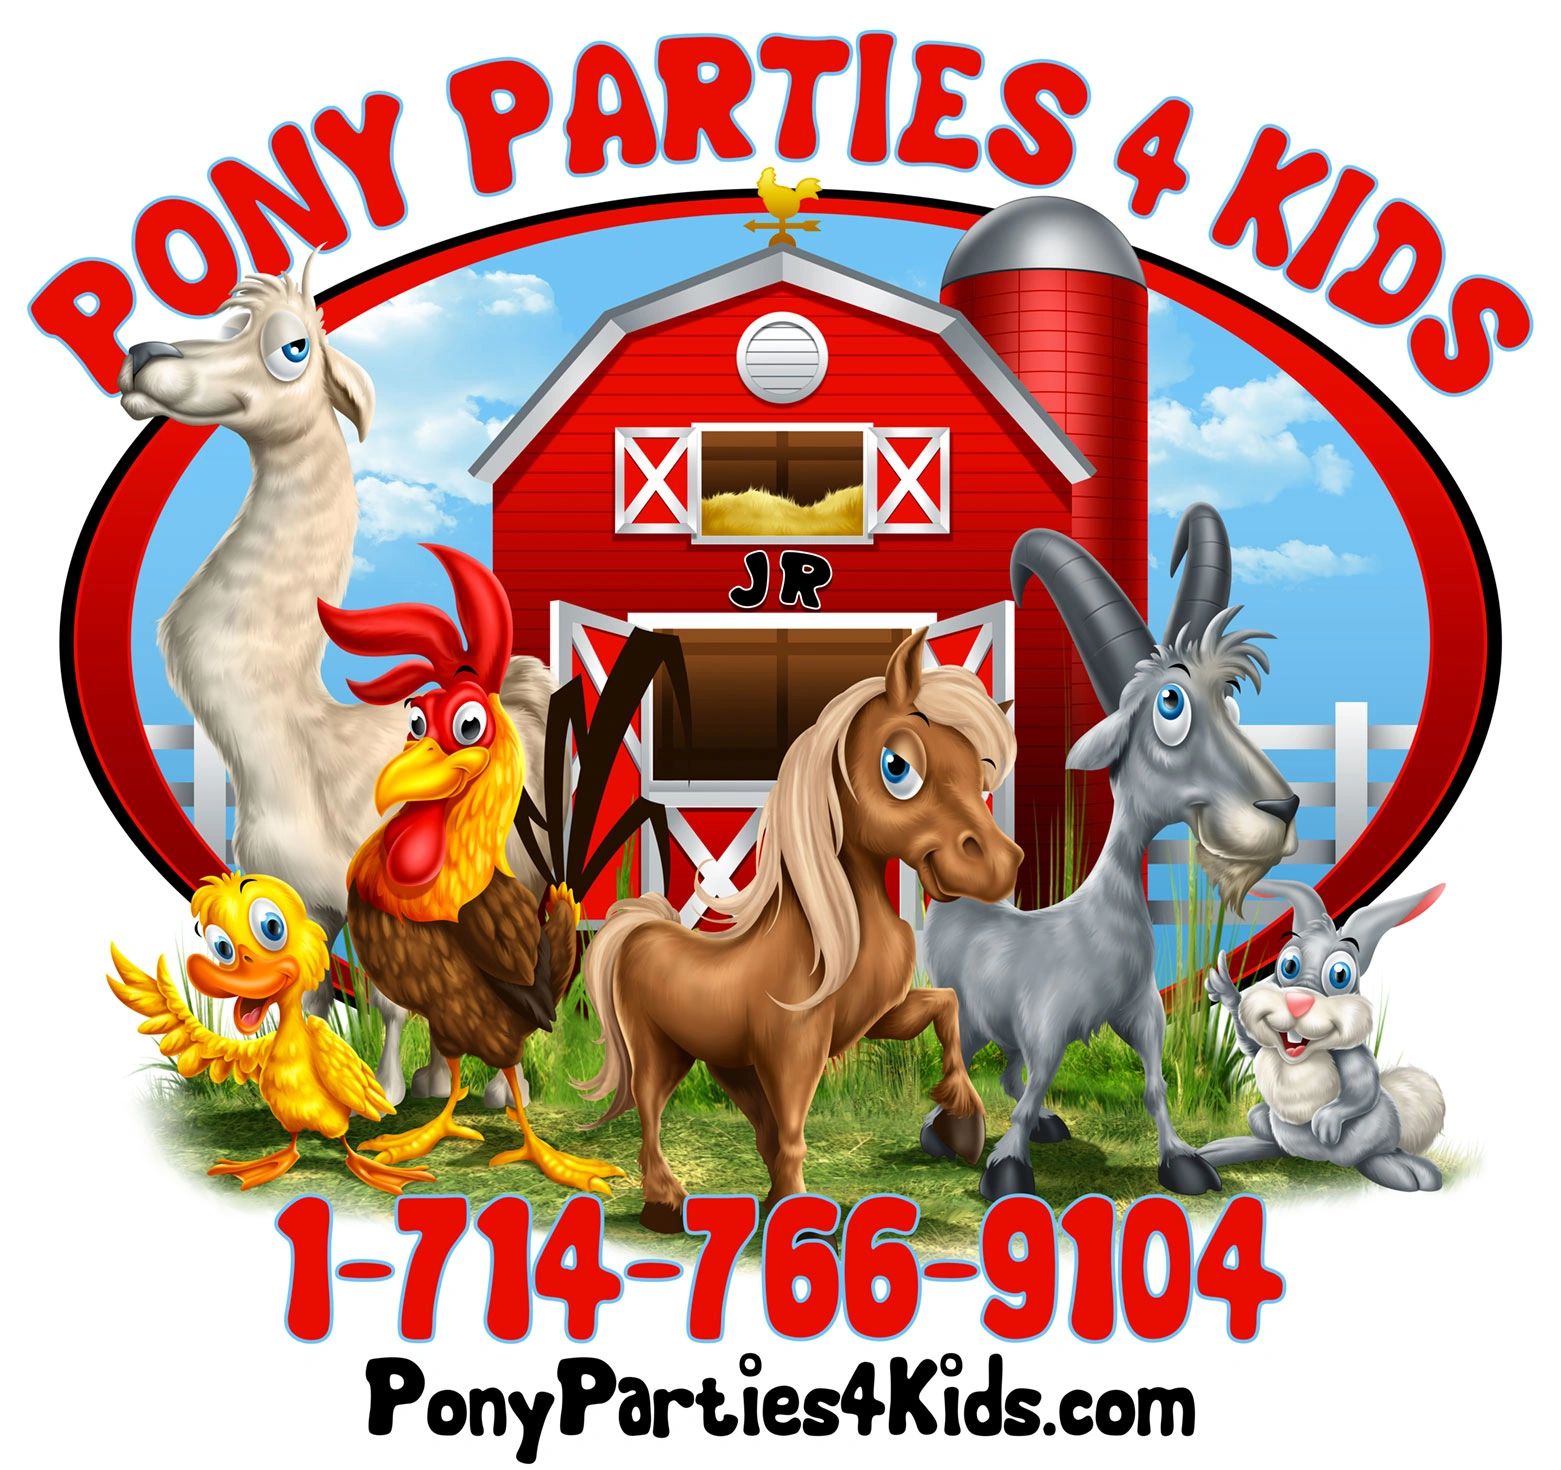 Pony Parties 4 Kids